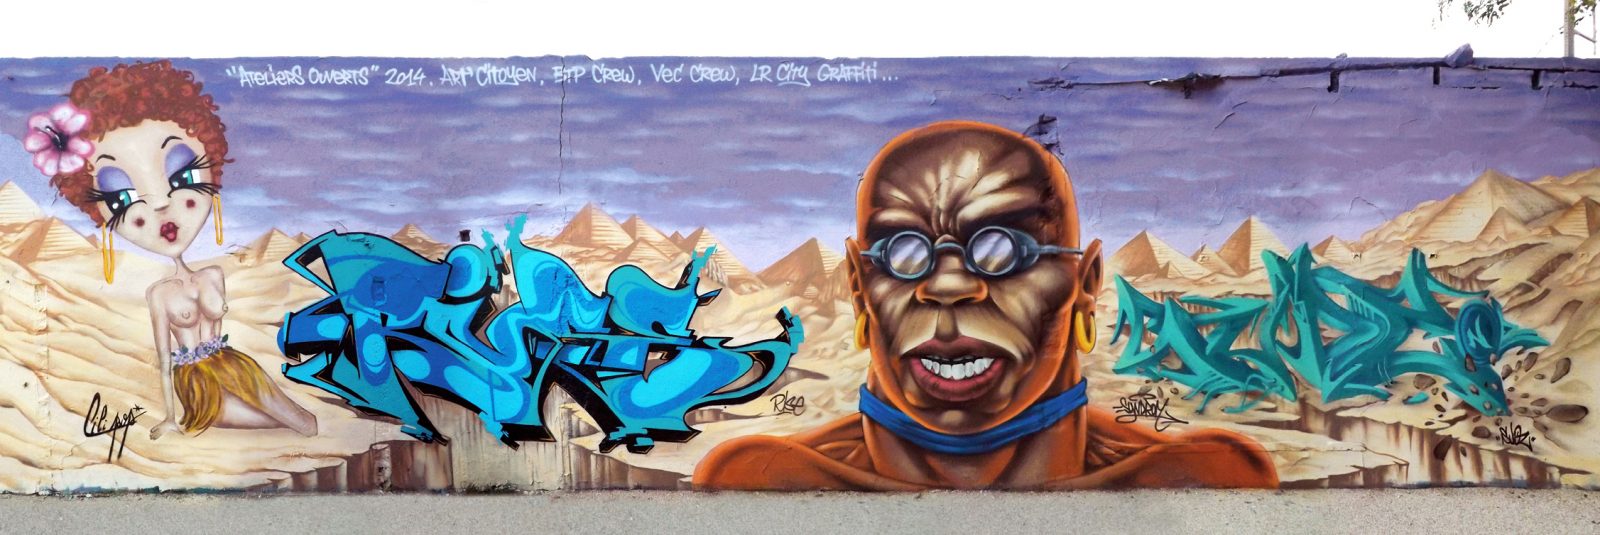 Ateliers ouverts 2014, B.T.P. V.E.C. crew graffiti LA ROCHELLE